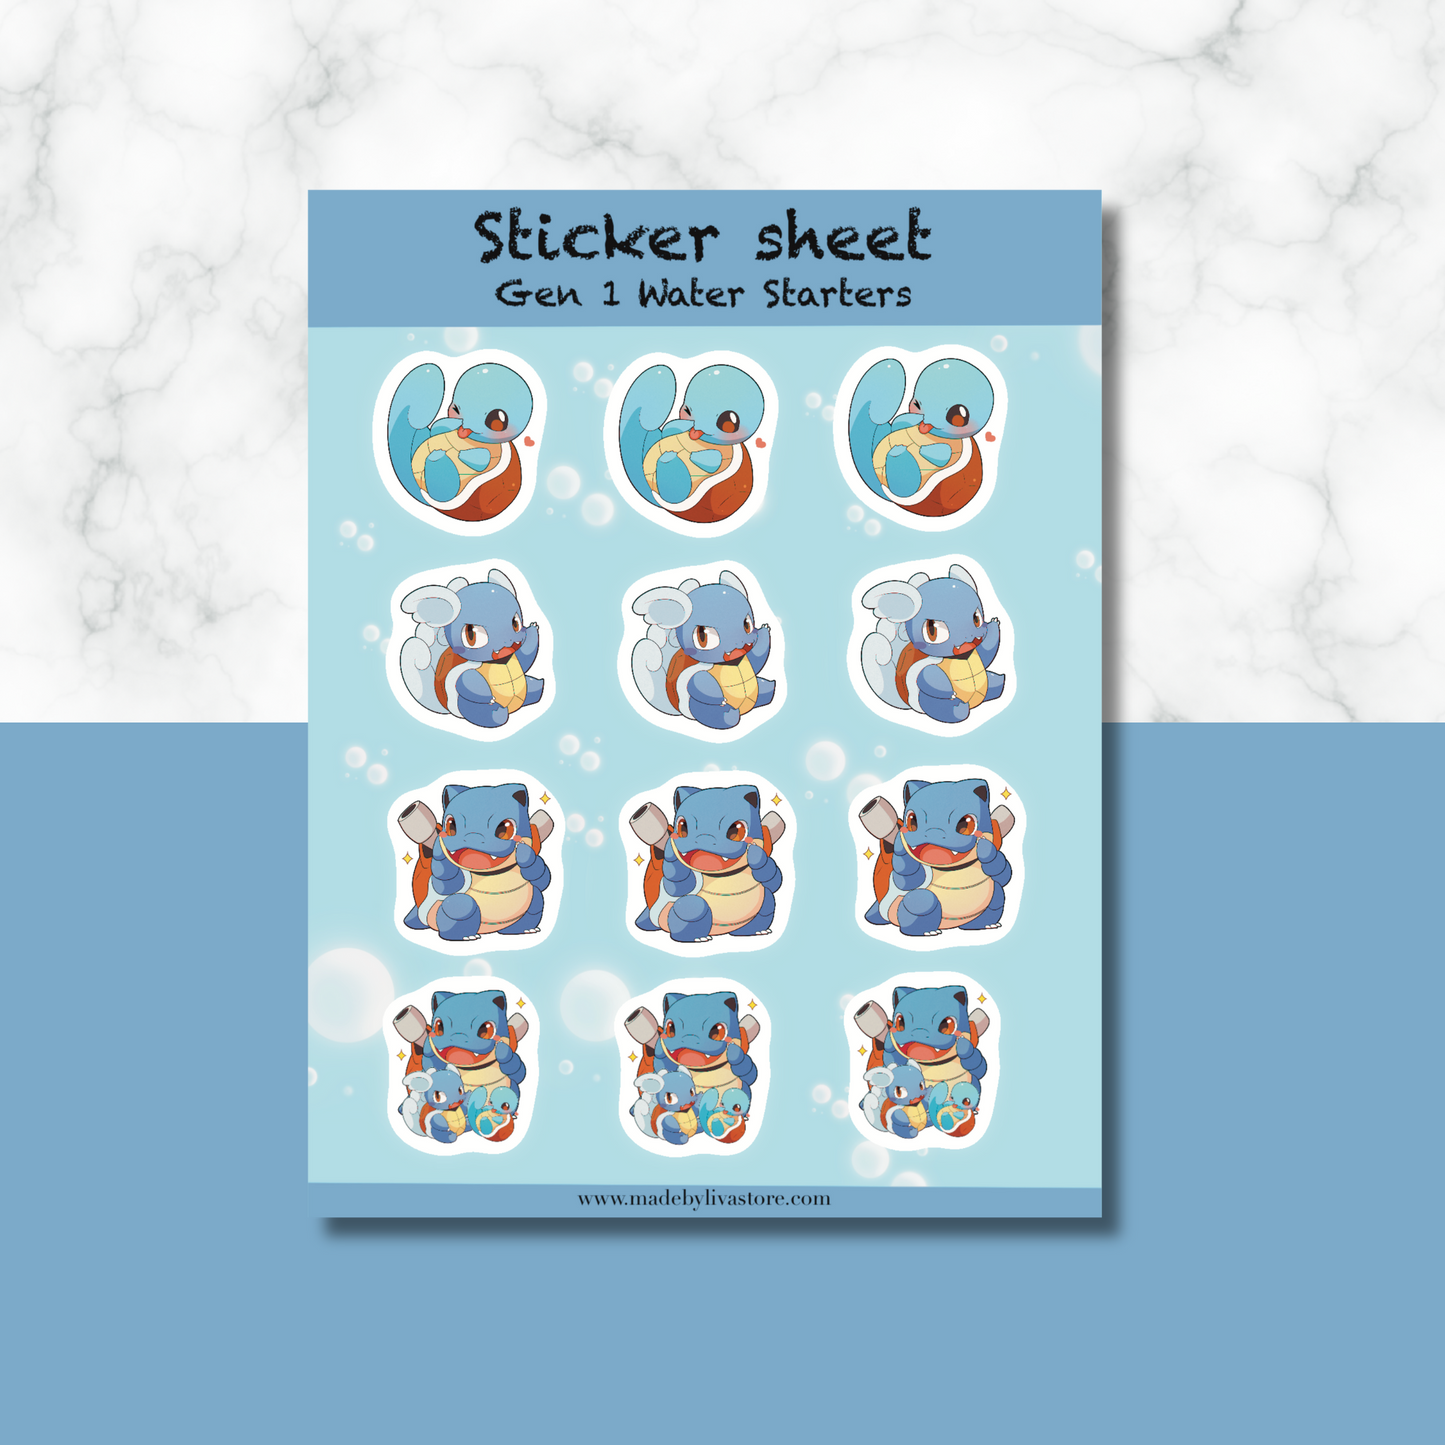 Gen 1 Water Starters Sticker Sheet